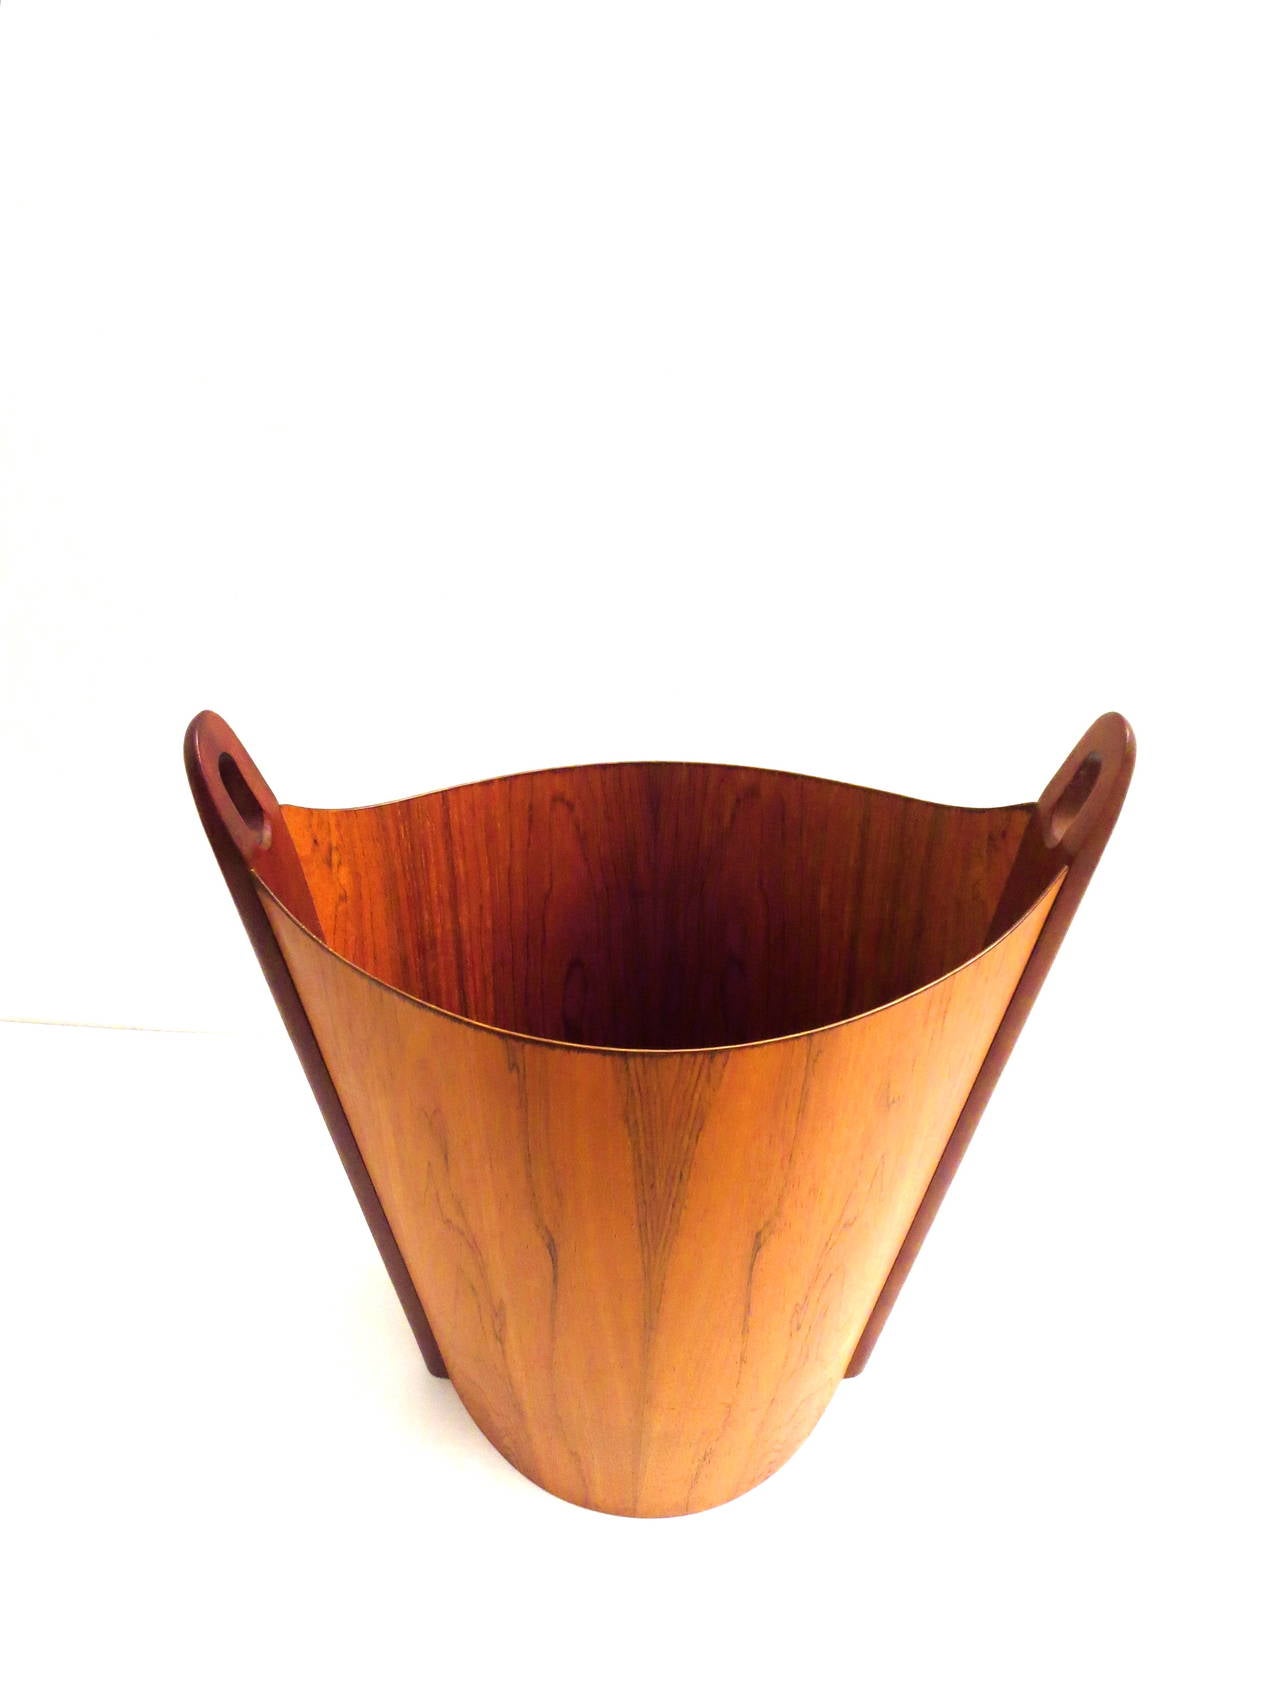 Norwegian Danish Modern Rosewood Wastepaper Basket Designed by Einar Barnes Norway